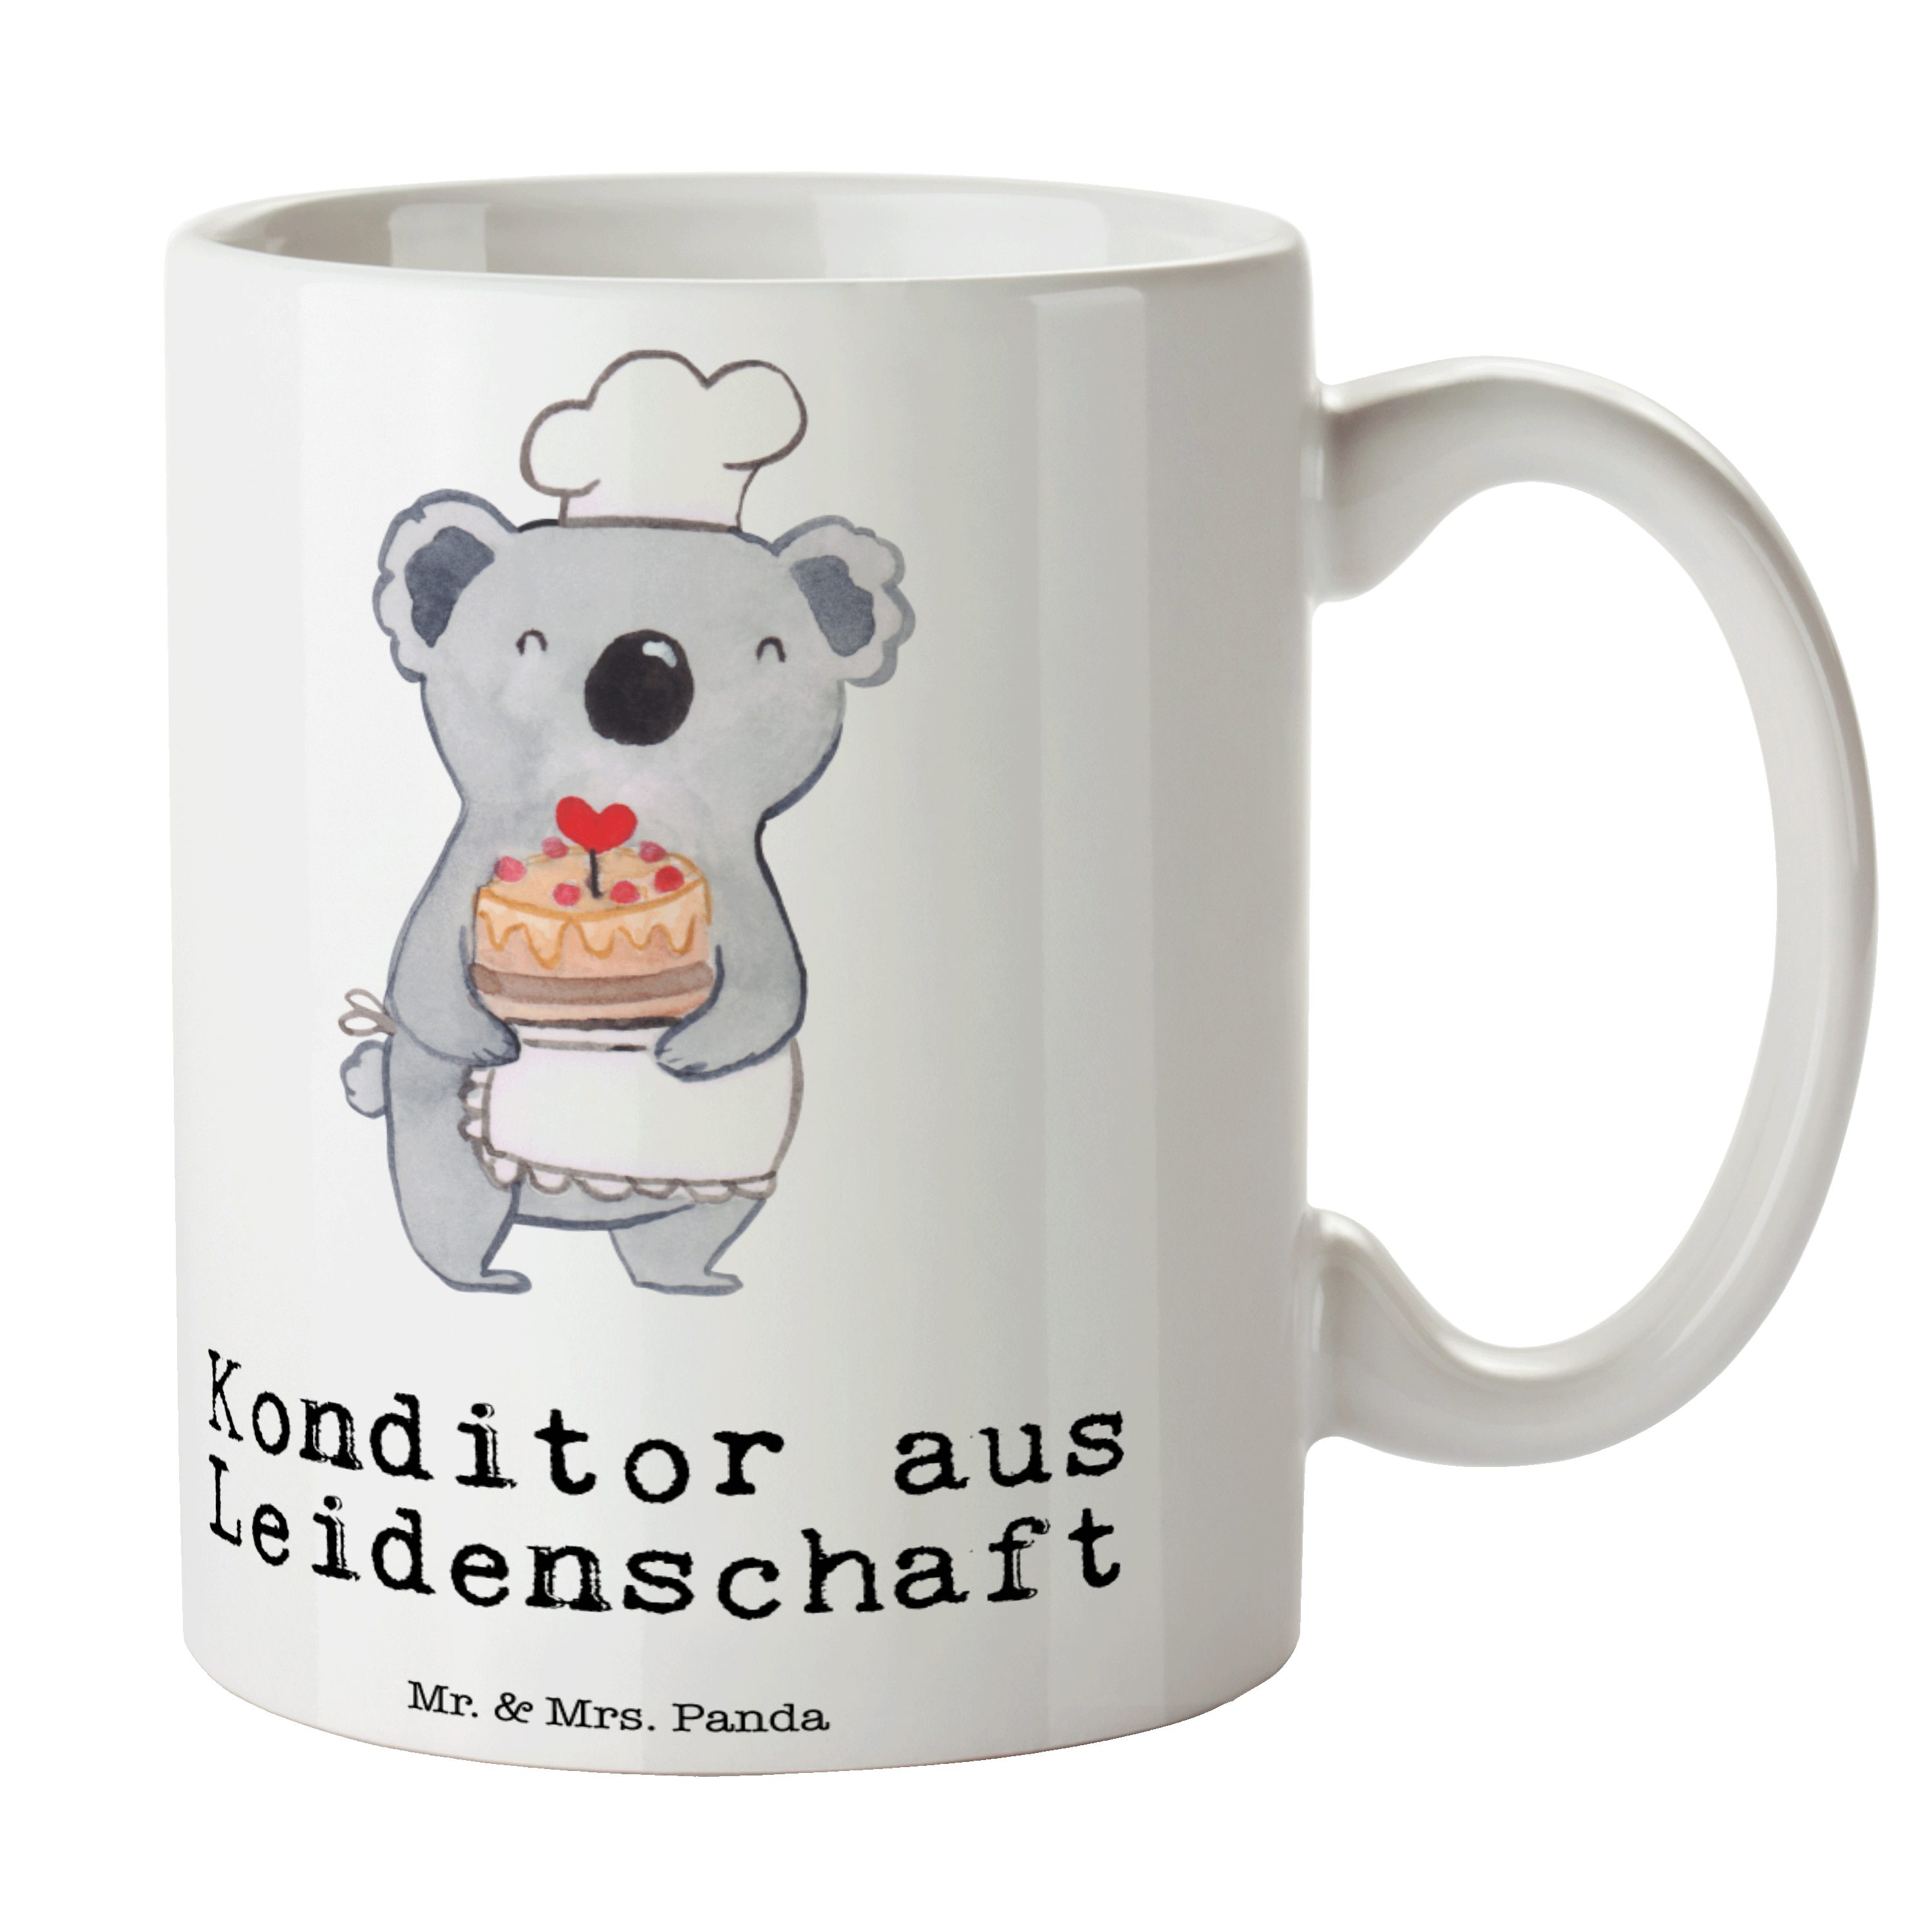 Mr. & Mrs. Panda Tasse Konditor aus Leidenschaft - Weiß - Geschenk, Dankeschön, Kuchenbäcker, Keramik | Tassen